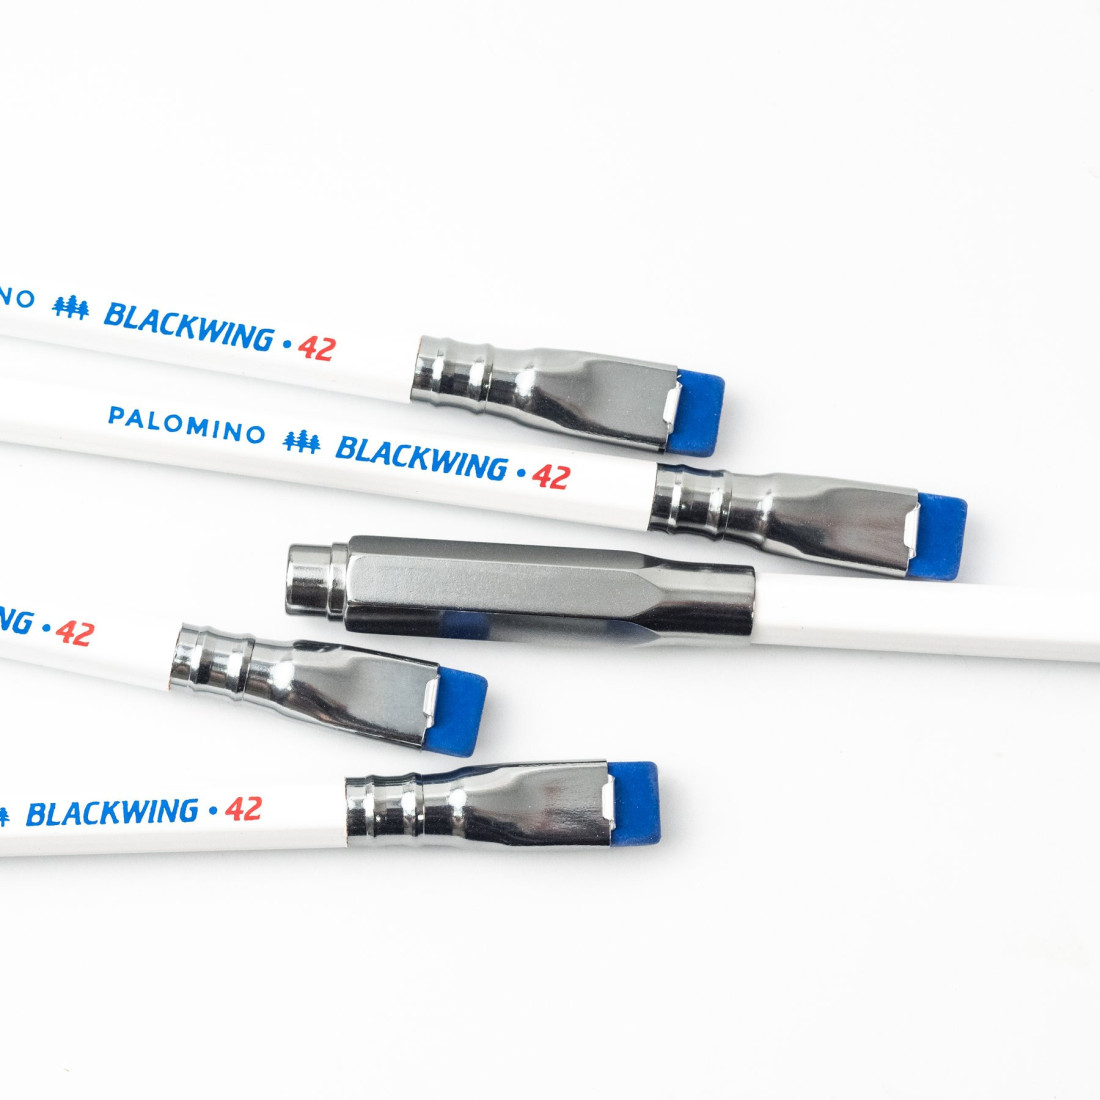 Palomino Blackwing white pencils vol. 42, set of 12